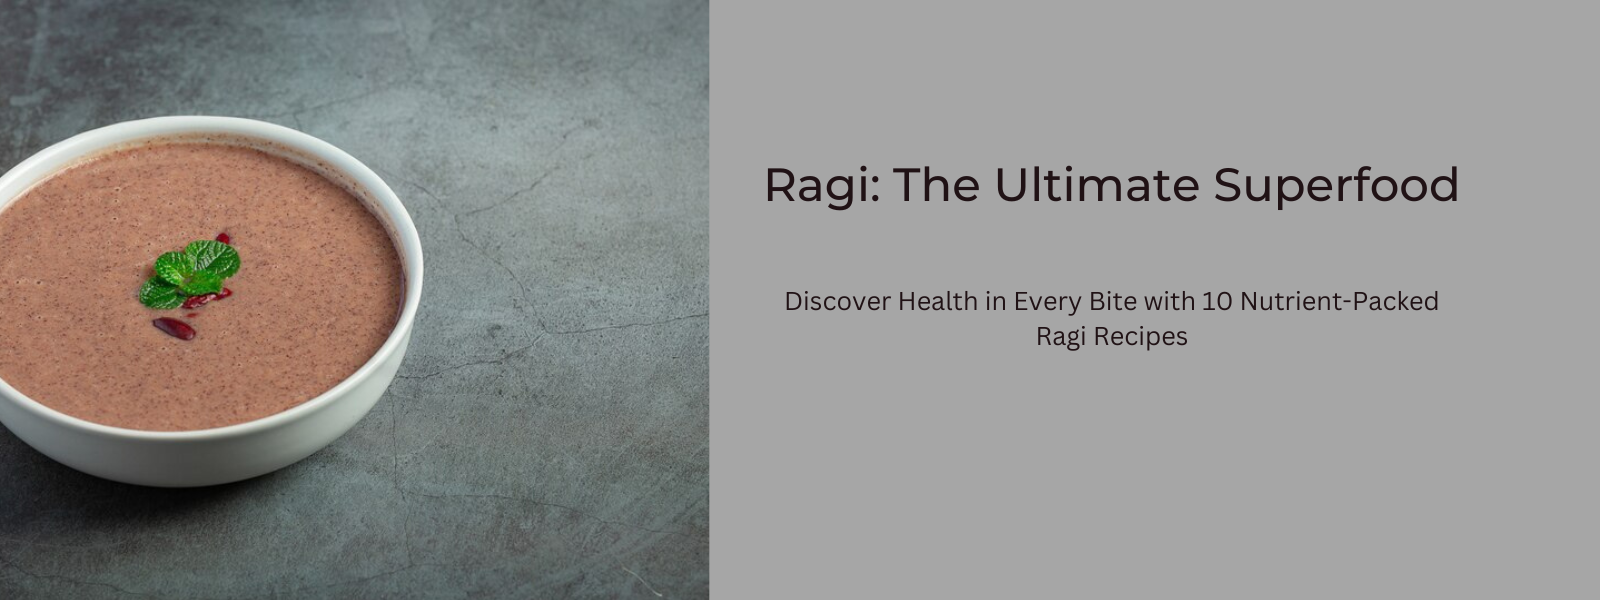 Ragi: The Ultimate Superfood